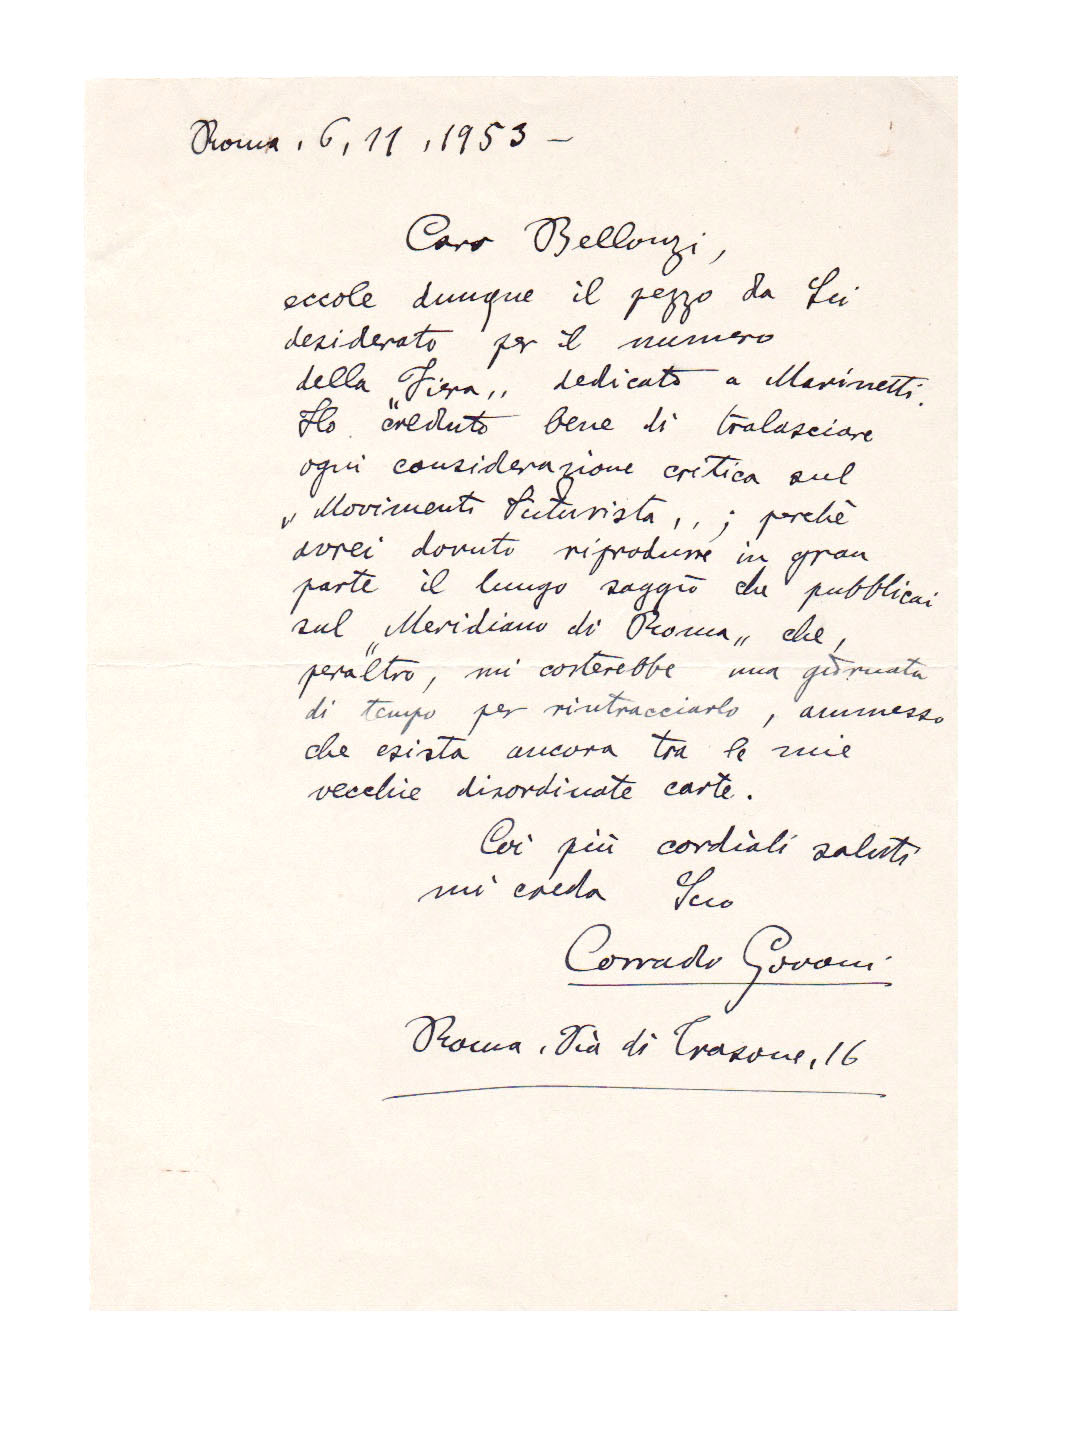 lettera autografa firmata, datata 6 novembre 1953, inviata a fortunato bellonzi, a proposito dell’articolo «il mio primo incontro con marinetti»